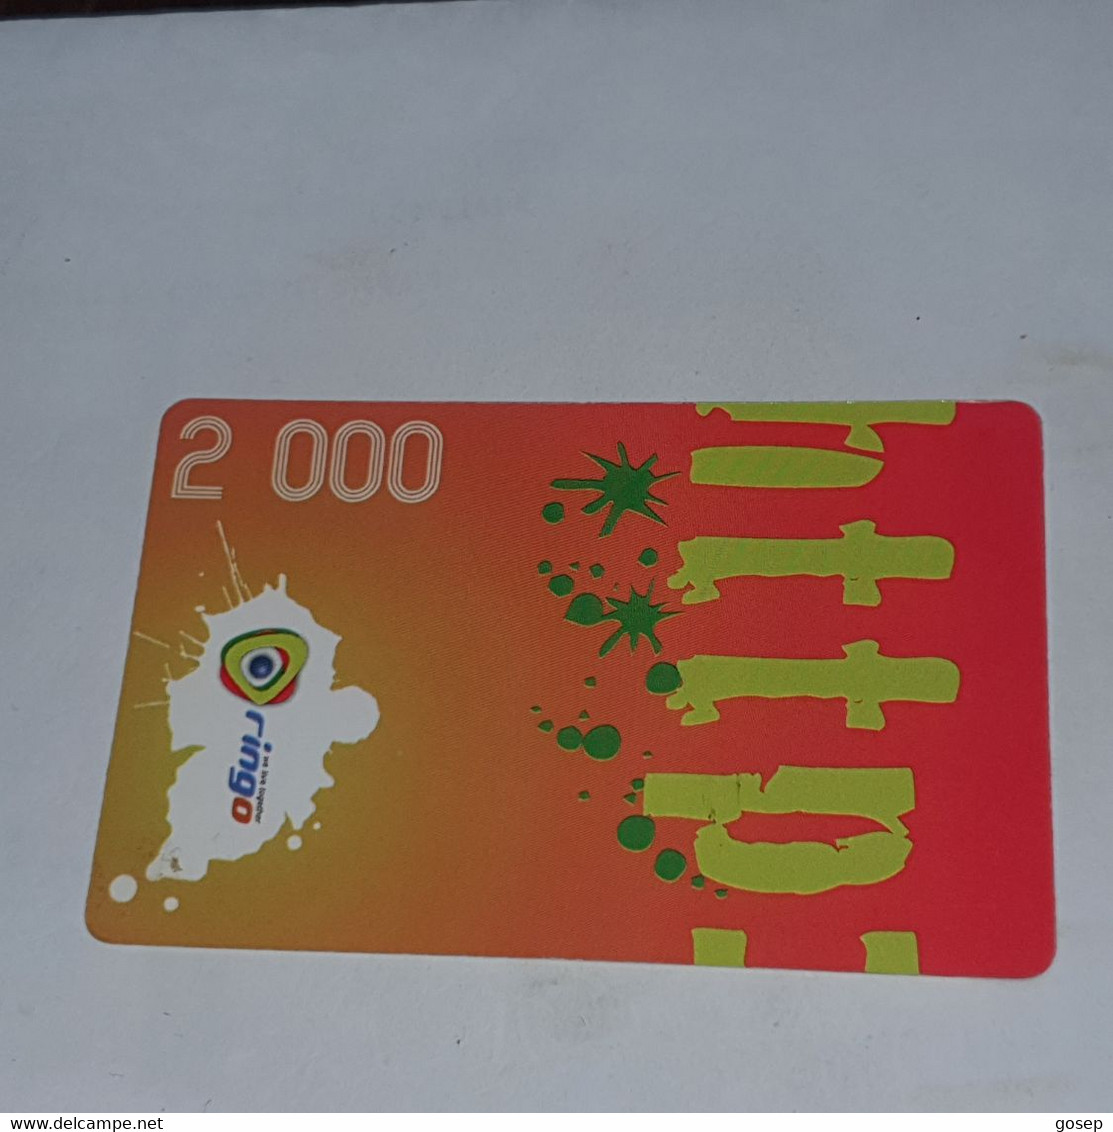 Cameroon-(CAM)-RINGO-(29)-(2.000)-(DUMMY)-(11/2009)+1card Prepiad - Cameroon